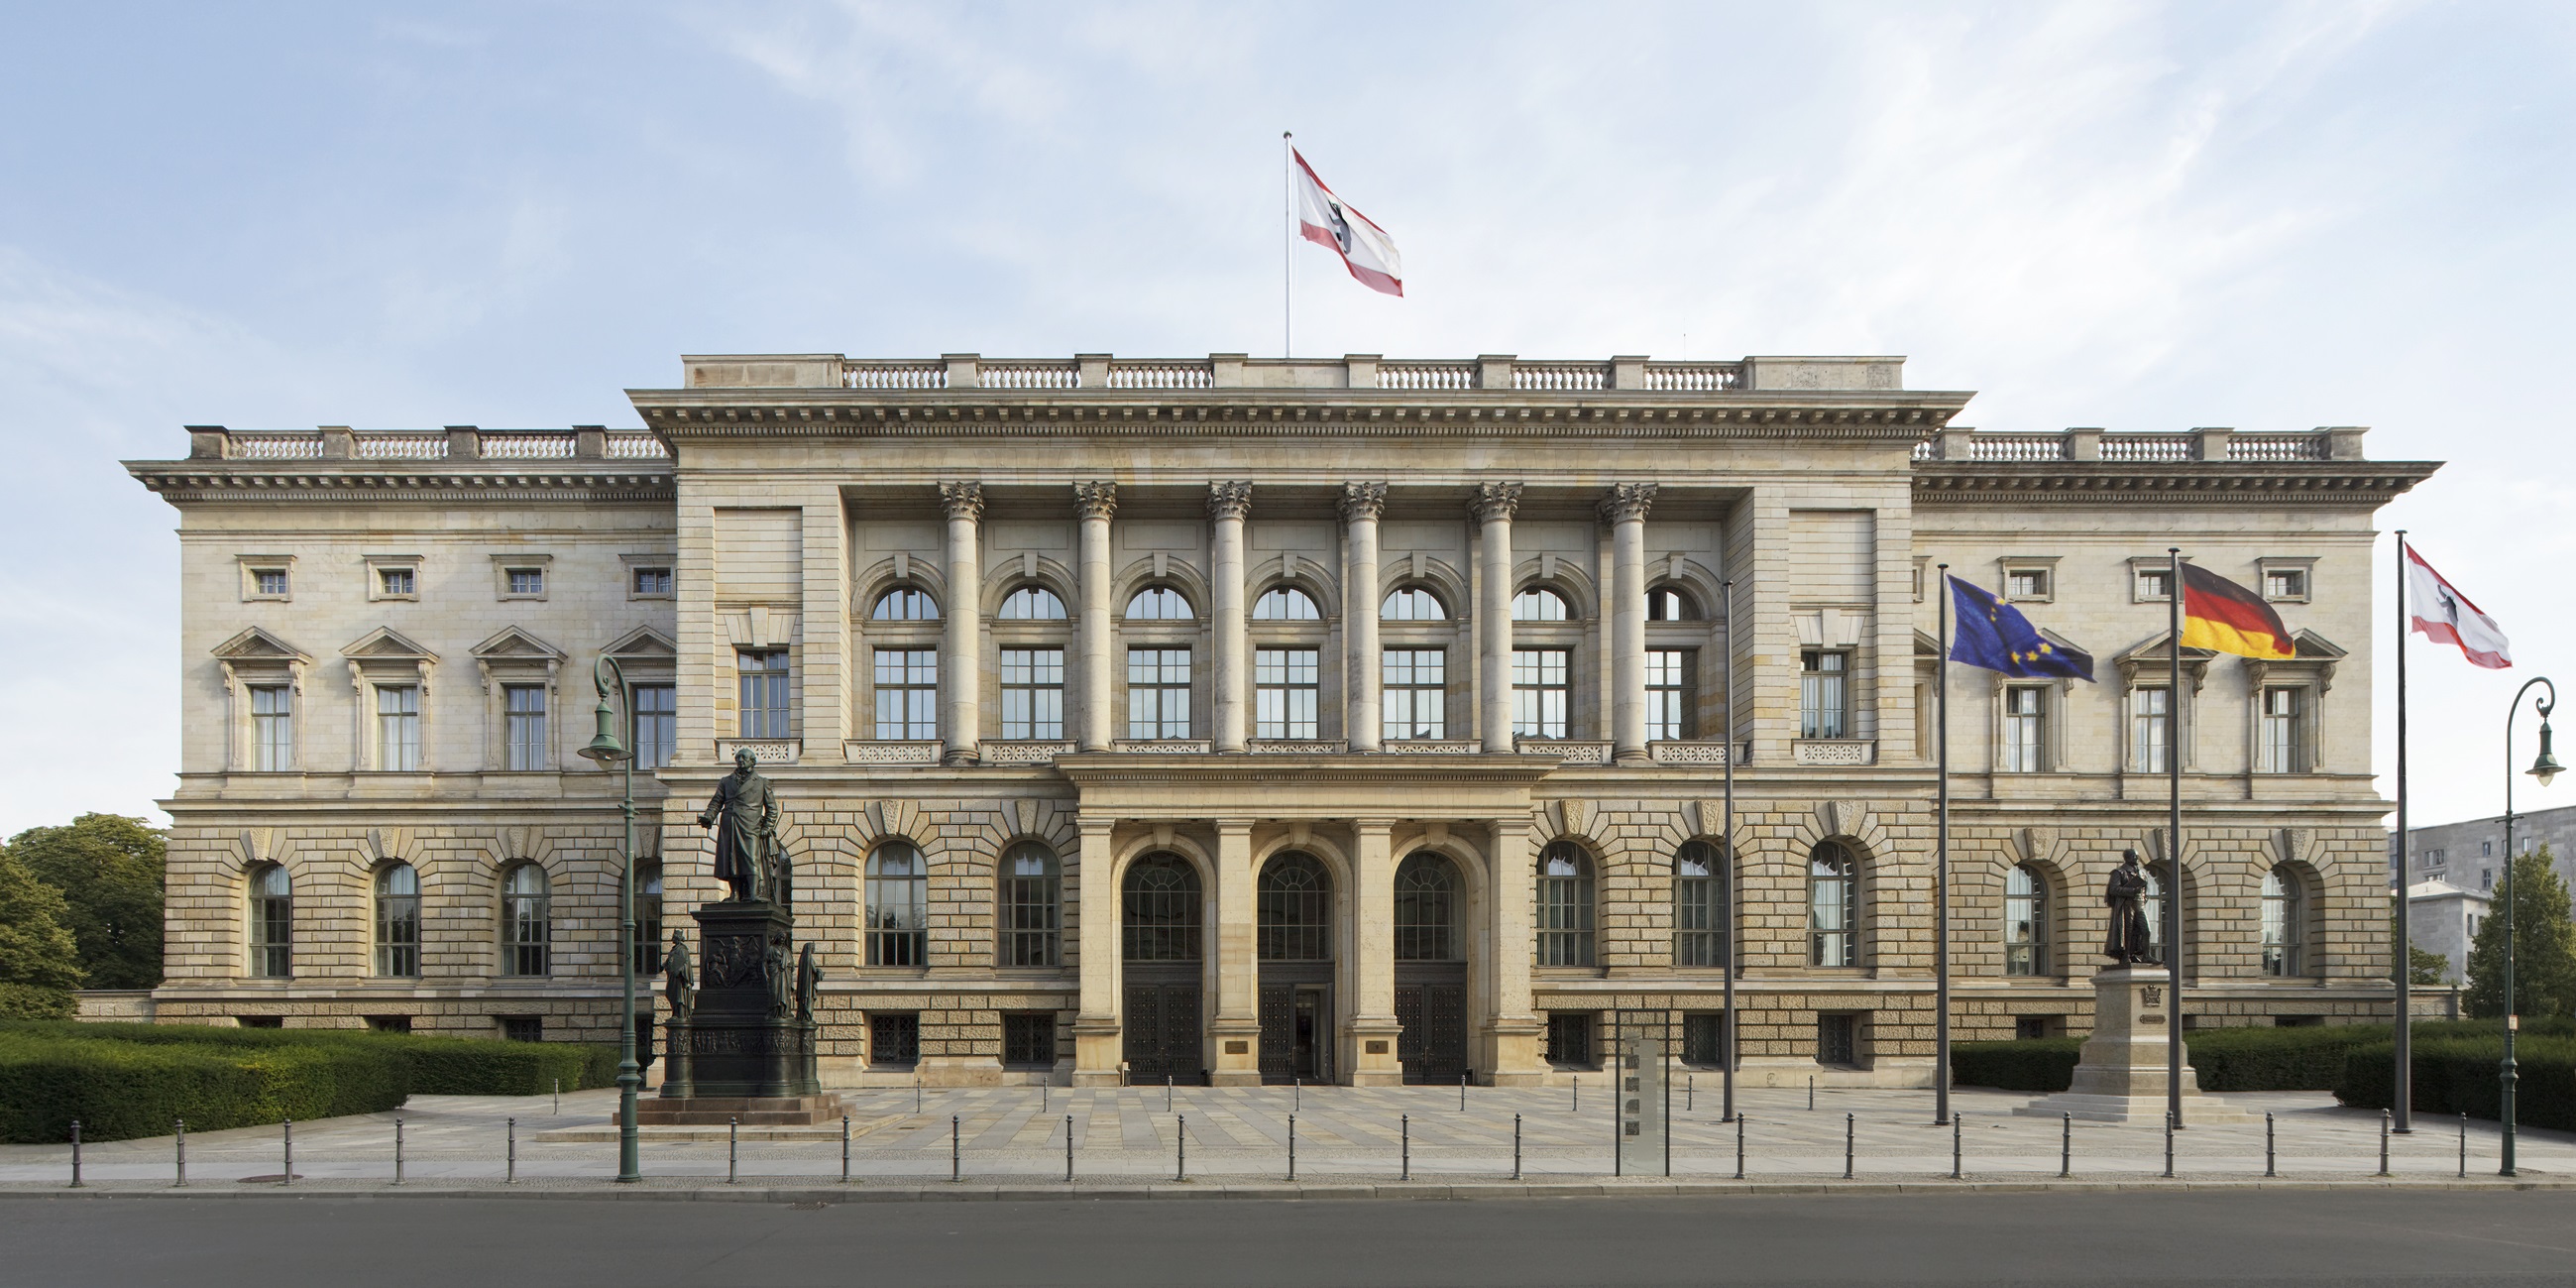 Hausansicht des AGH -
Blick auf das Abgeordnetenhaus von Berlin
Bildnachweis: © Peter Thieme